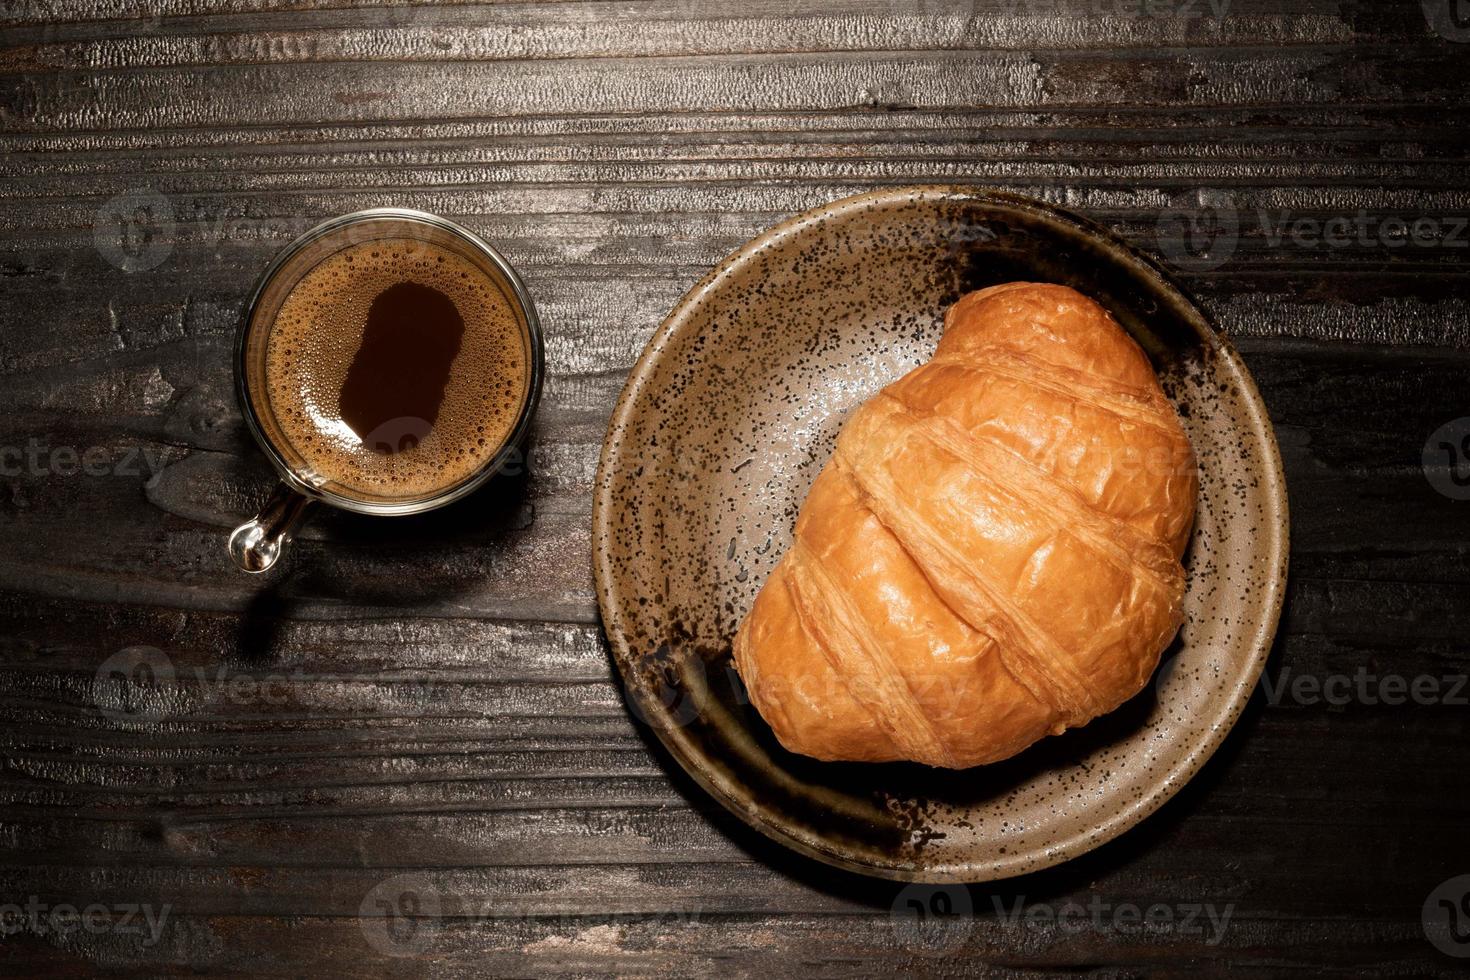 croissant per la colazione nel piatto e caffè sul tavolo di legno. foto